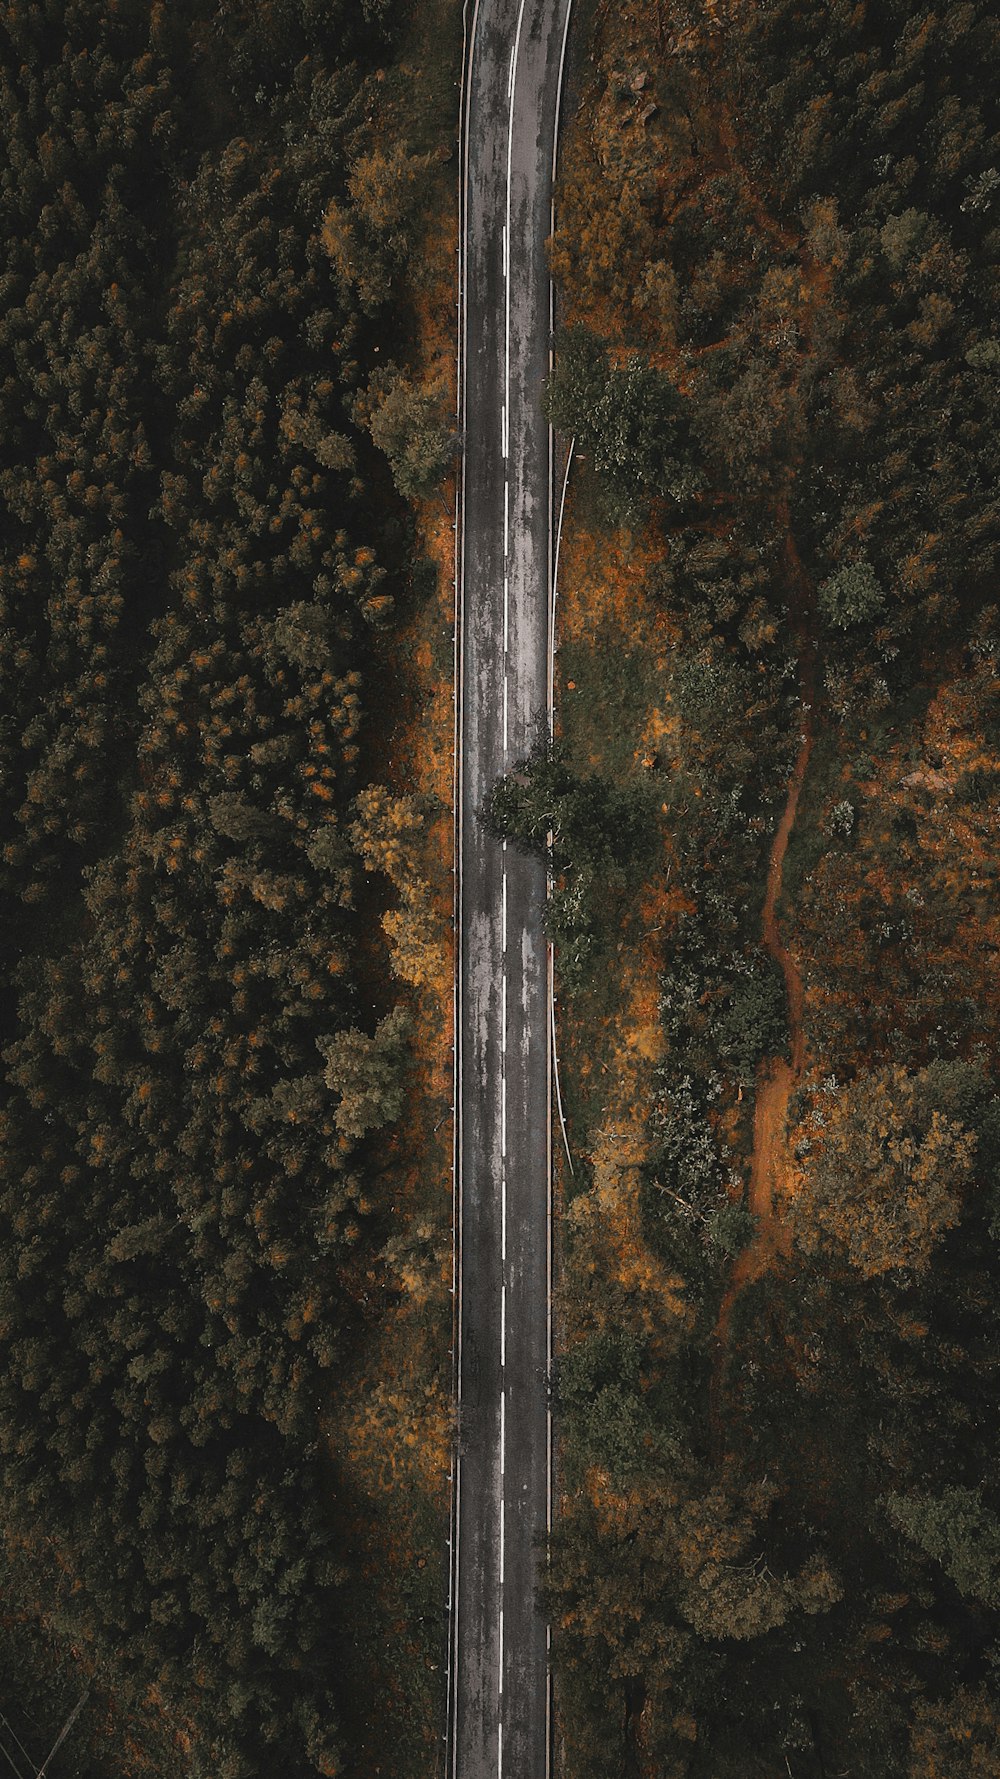 Vista aérea de la carretera entre los árboles